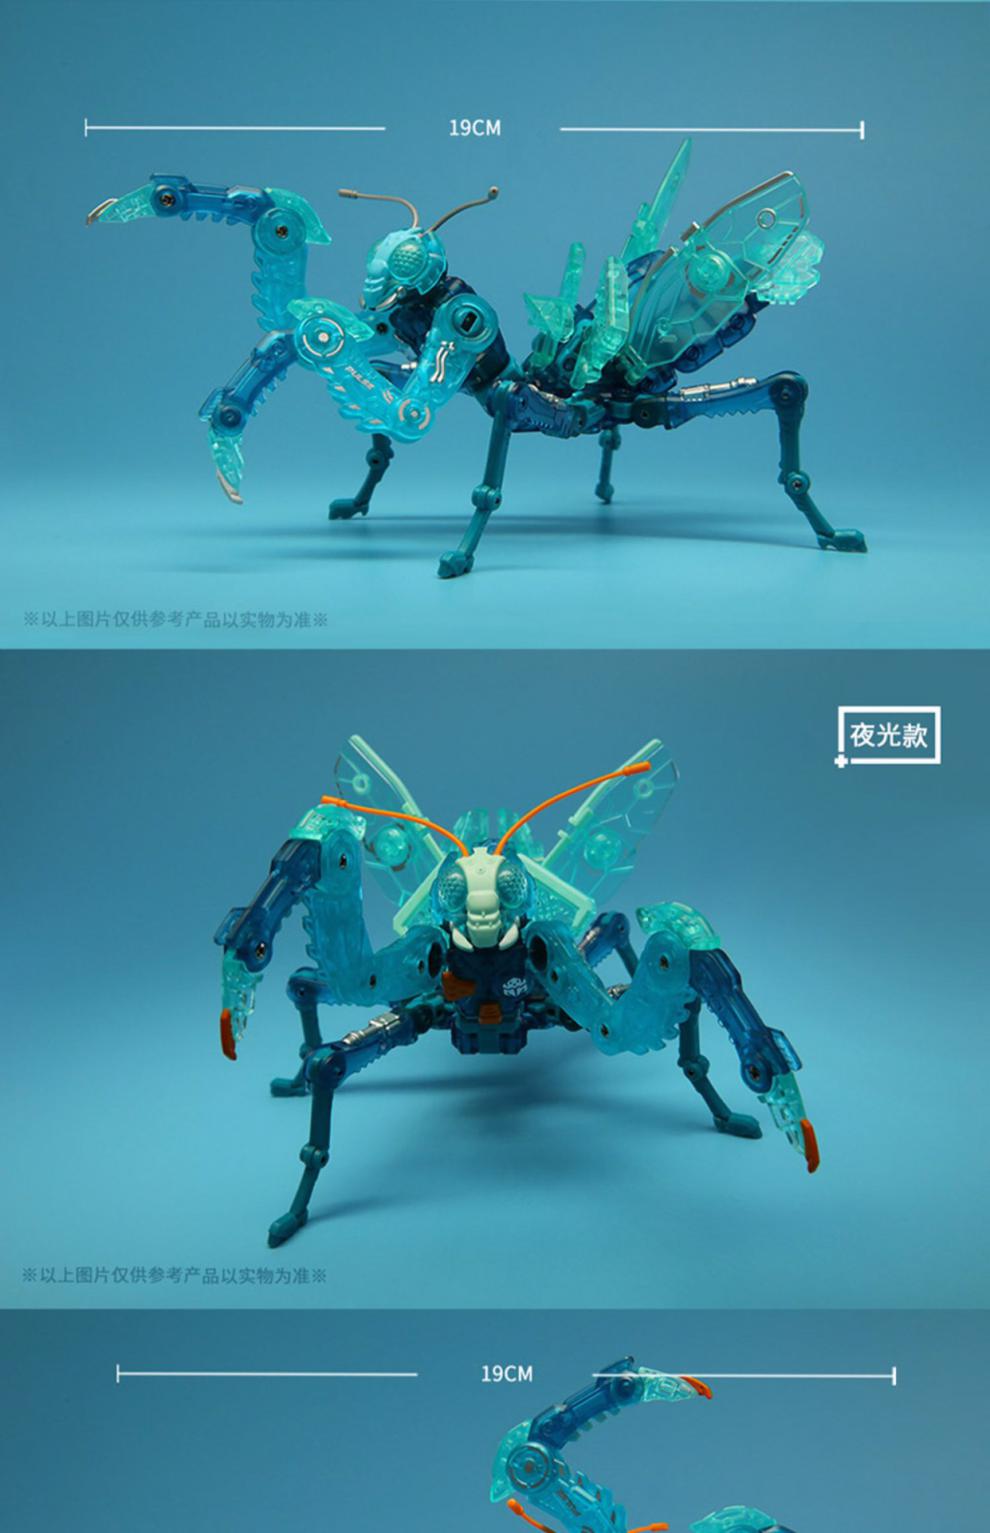 万代bandan猛兽匣系列螳螂脉冲限定版玩具变形机甲模型潮玩礼盒新年